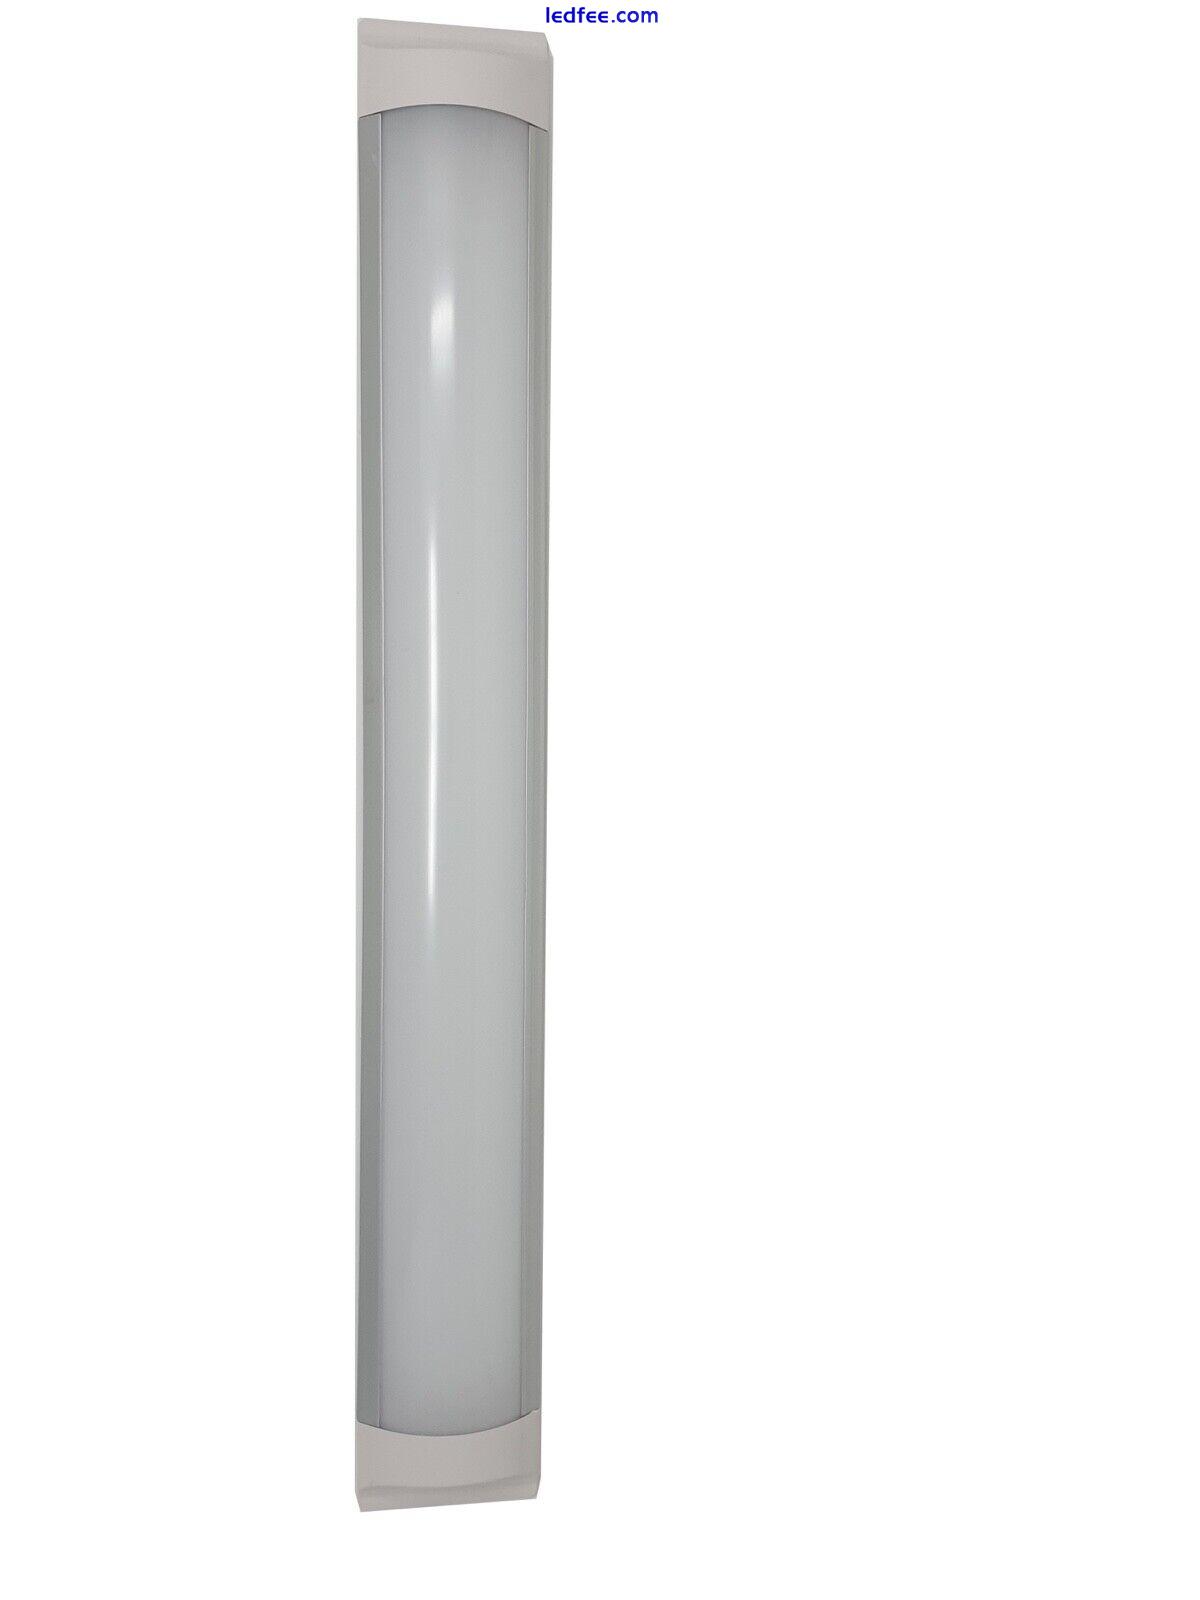 LED Batten Light 18W 2FT 60CM Flat Tube Slimline Daylight 6500k Ceiling Lamp 5 